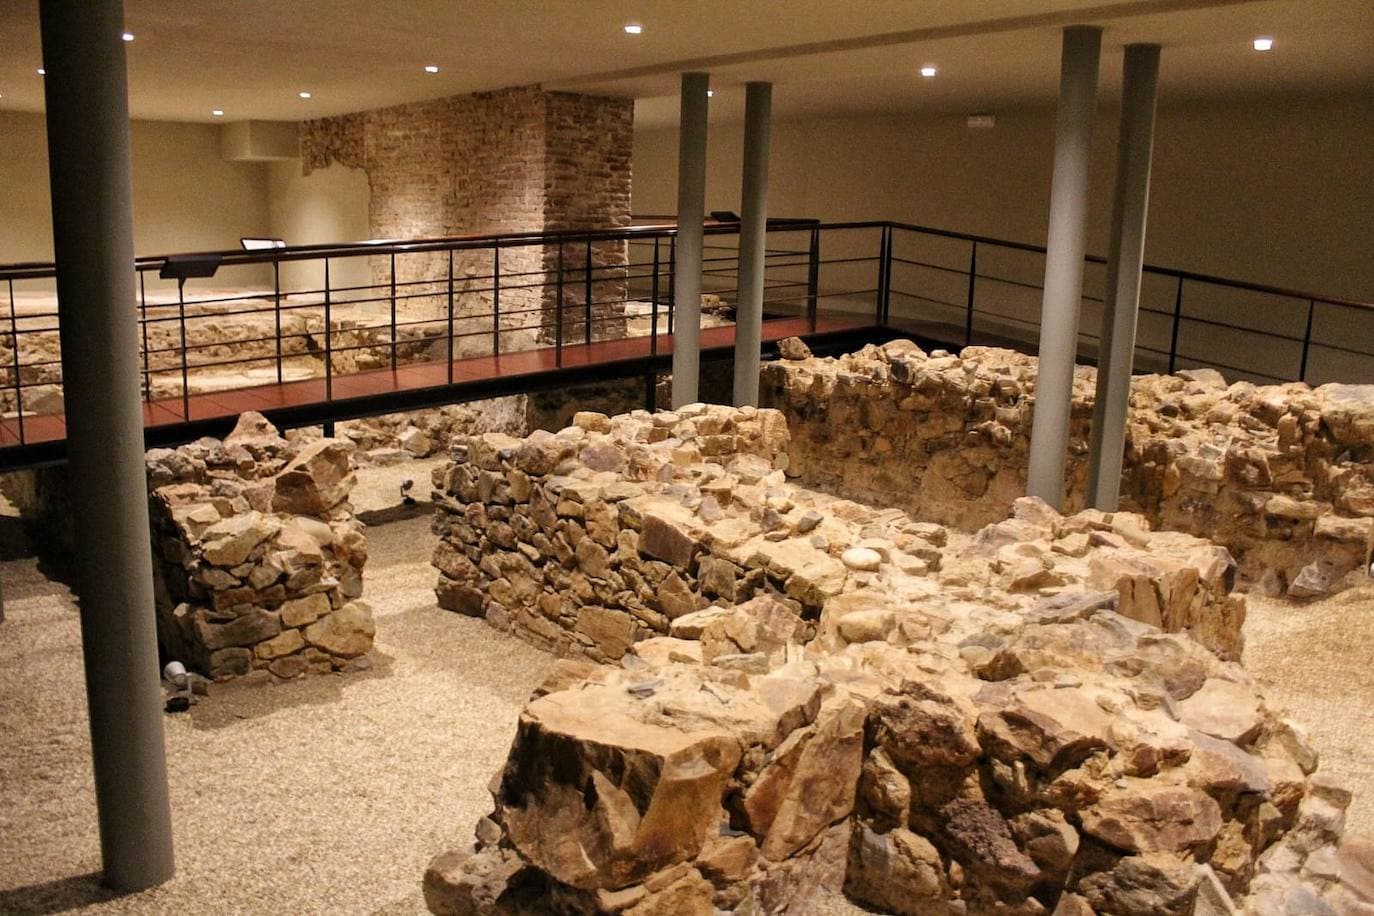 Restos de la muralla fenicia (siglo VI-V a. C.) y piletas de salazón de época romana.Ubicación: Museo Picasso. Visitable